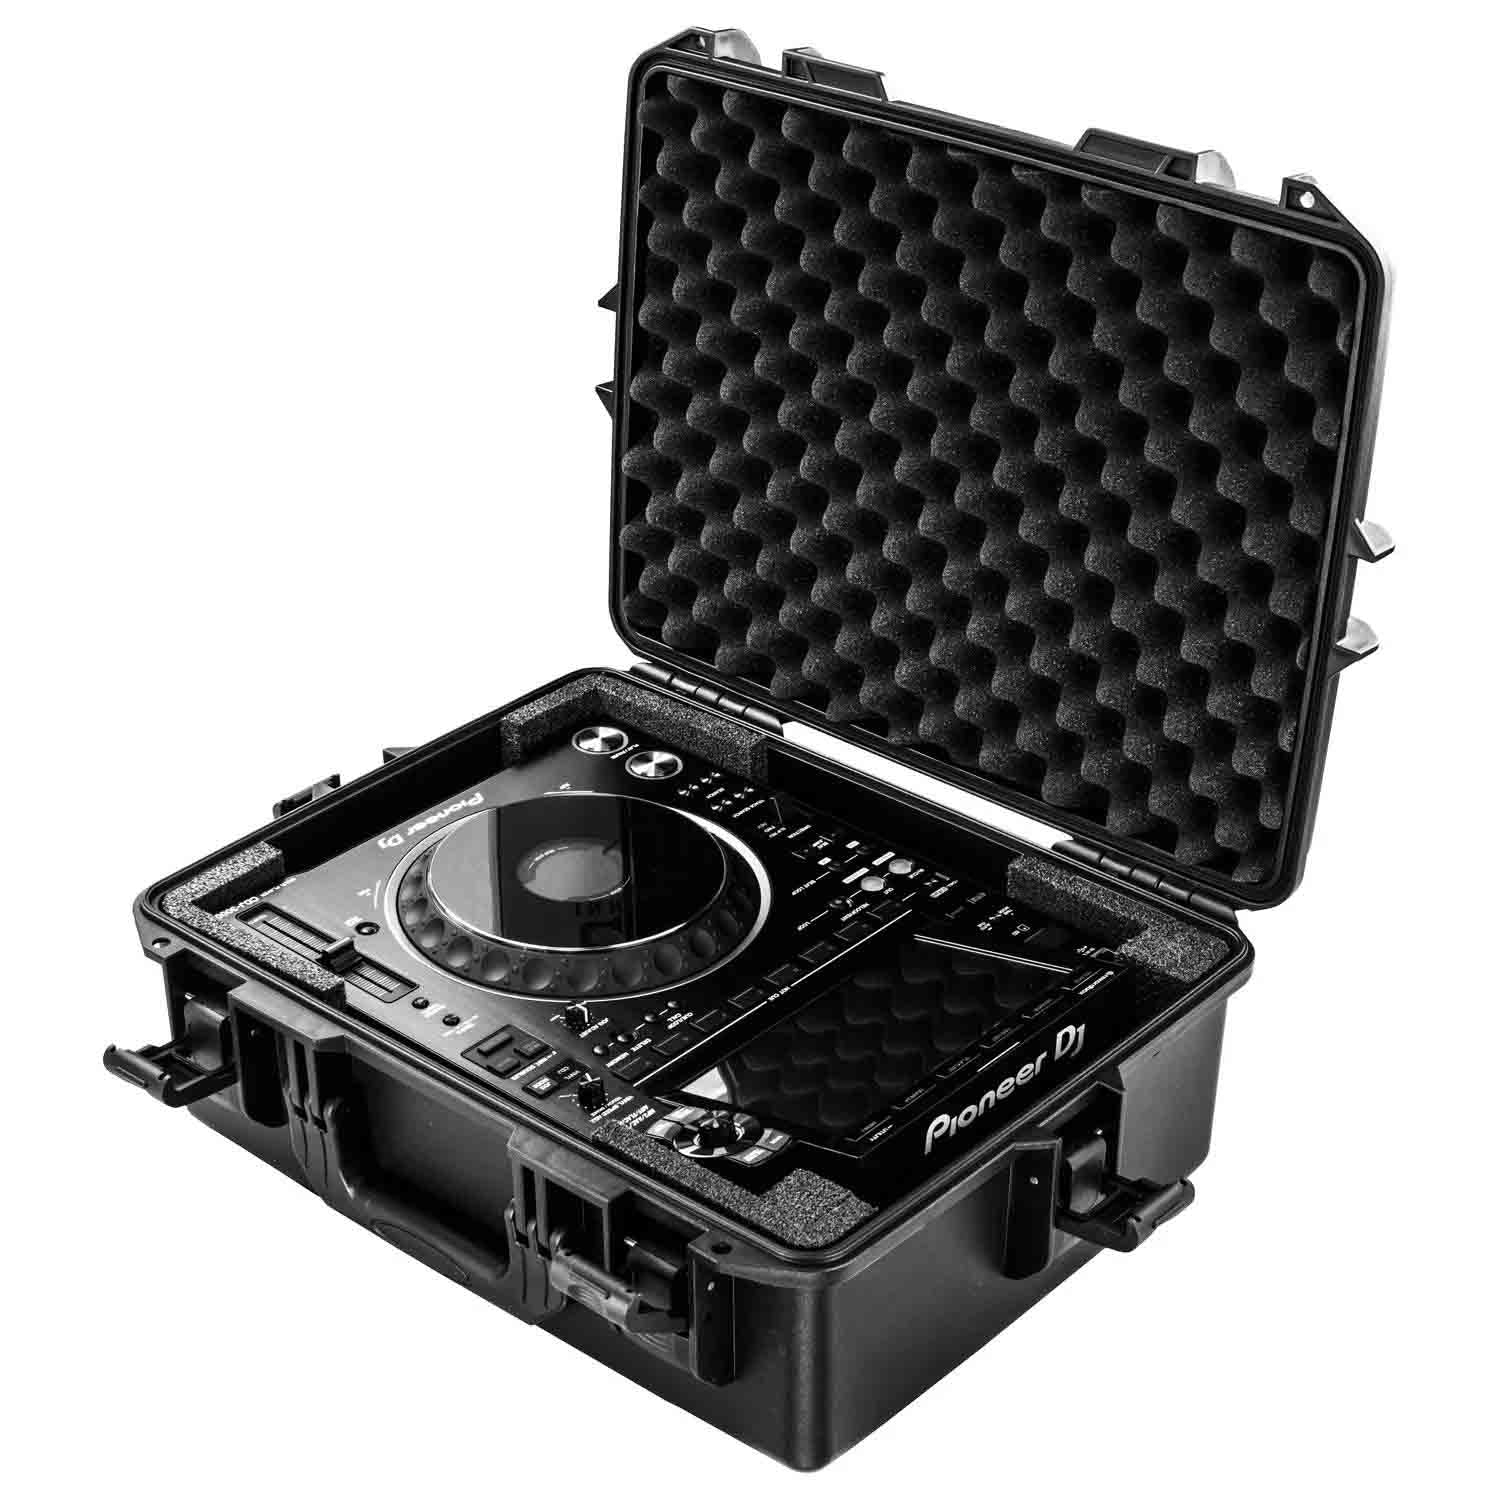 Odyssey VUCDJ3000 Dustproof and Waterproof Case For Pioneer CDJ-3000 DJ Multi Player - Hollywood DJ